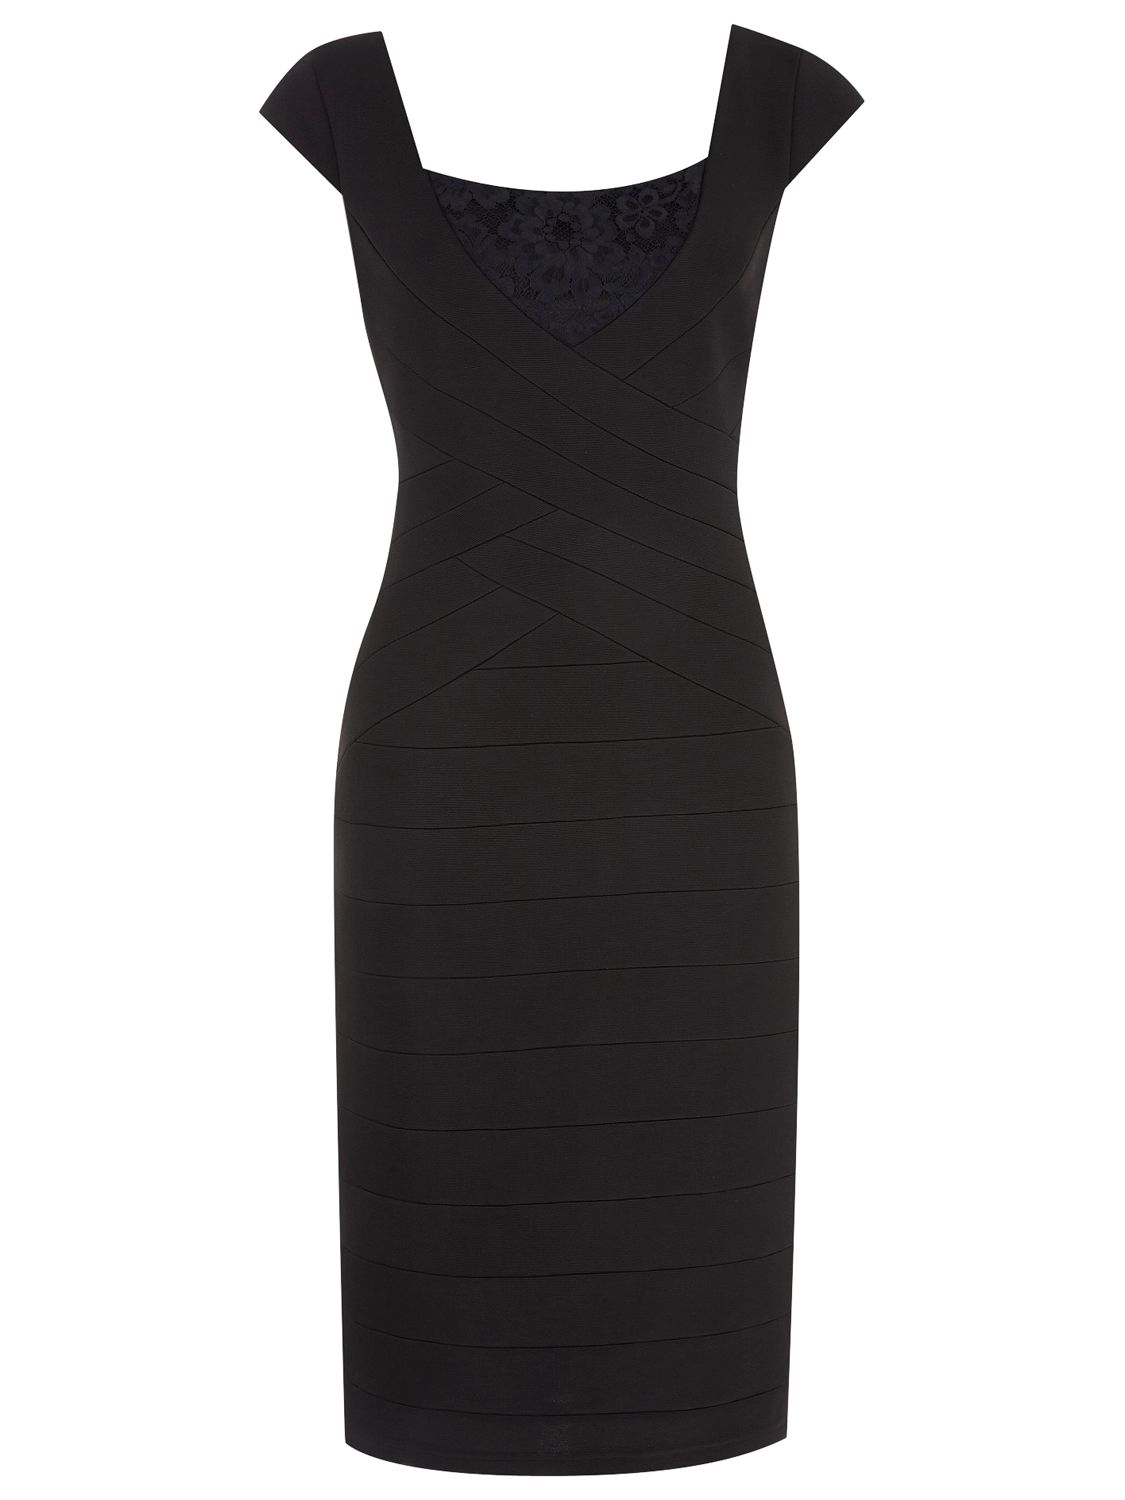 Buy Alexon Ottoman Lace Dress, Black Online at johnlewis.com